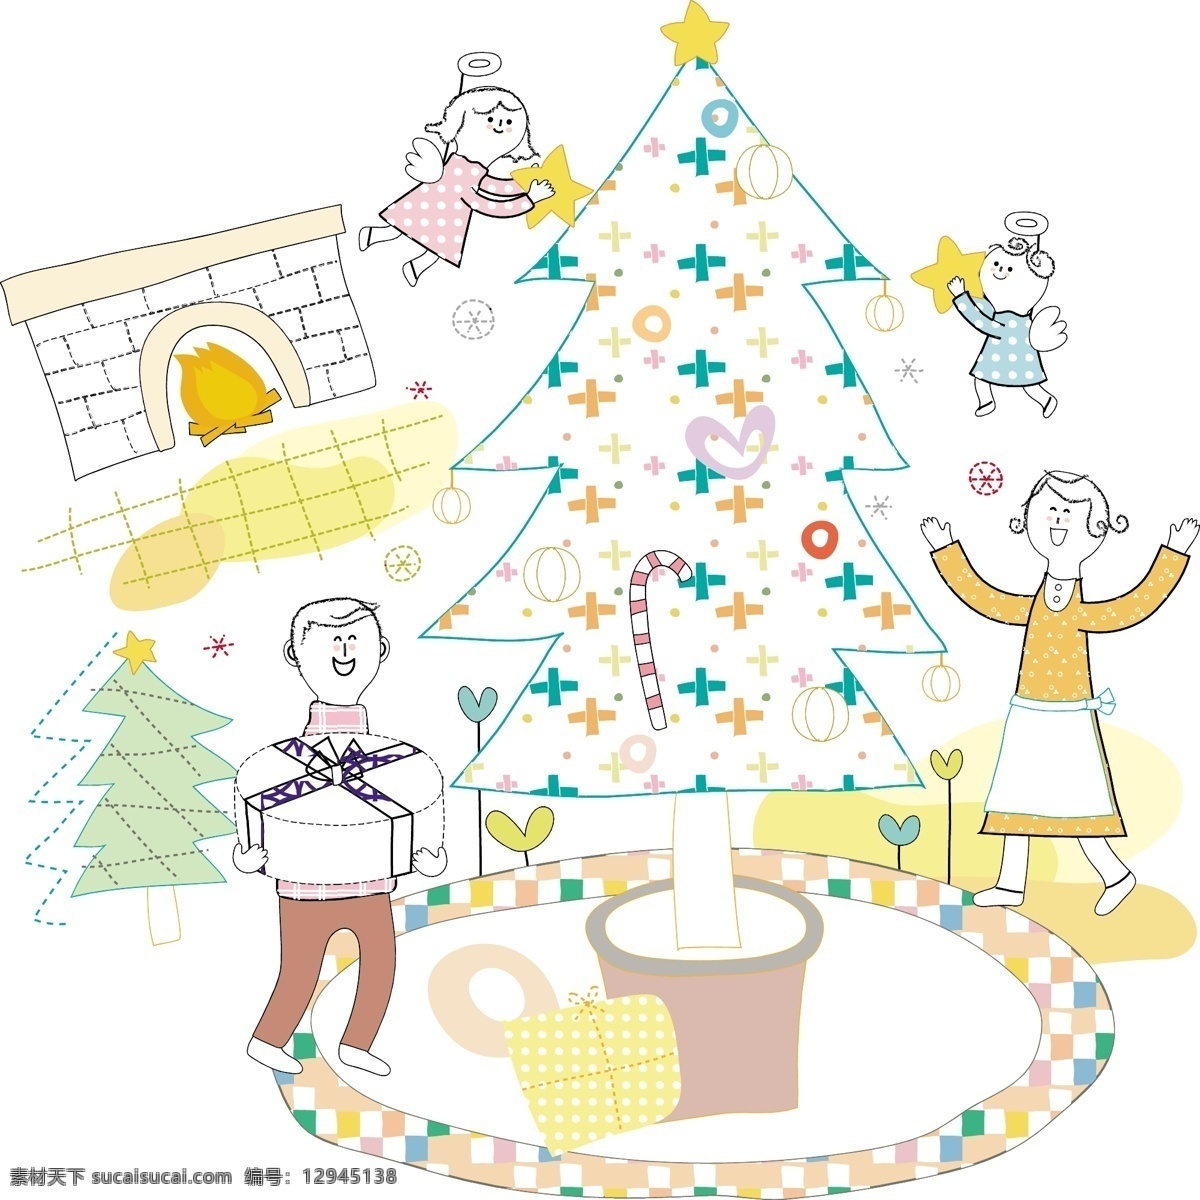 圣诞树 幸福 家庭 插画 psd素材 壁炉 节日 圣诞节 幸福家庭 psd源文件